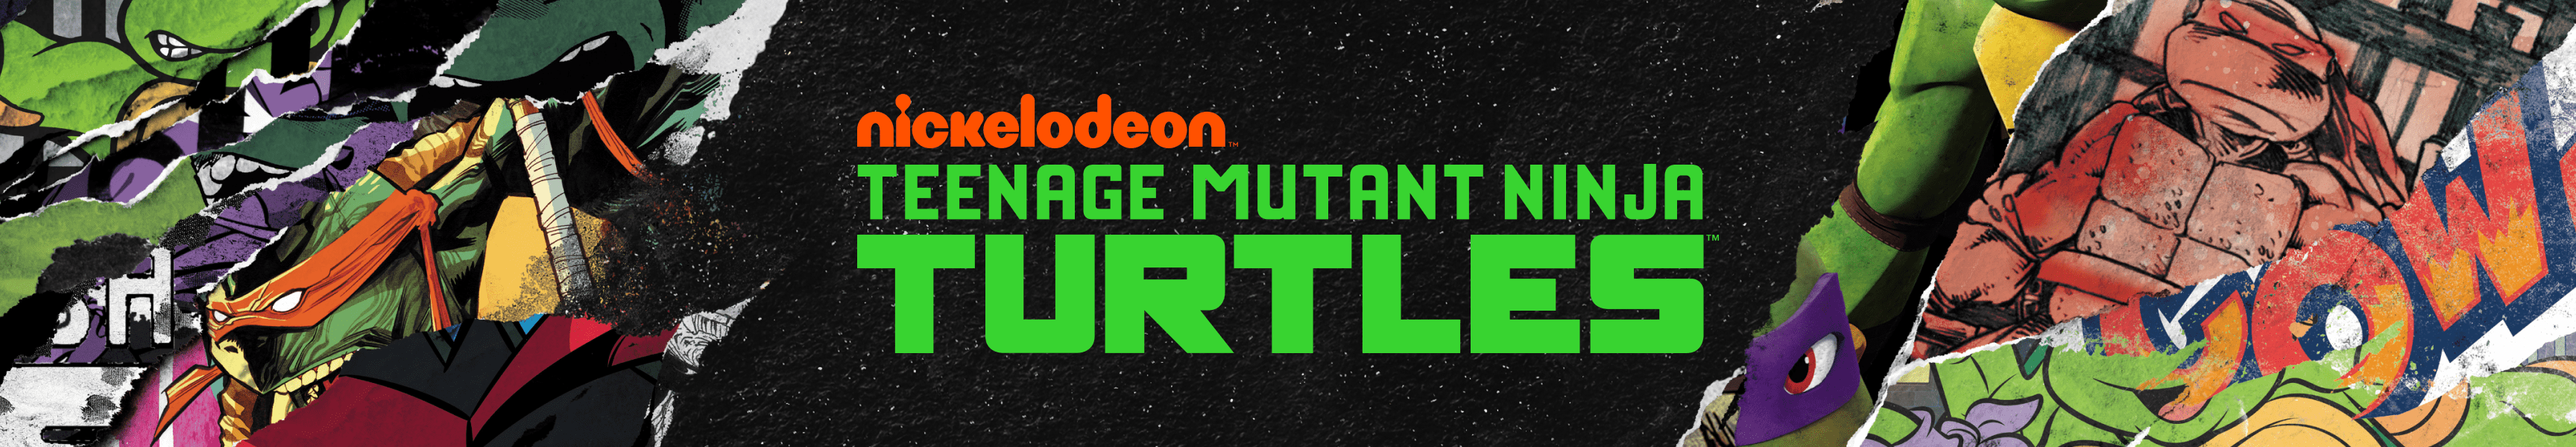 Teenage Mutant Ninja Turtles Best Sellers